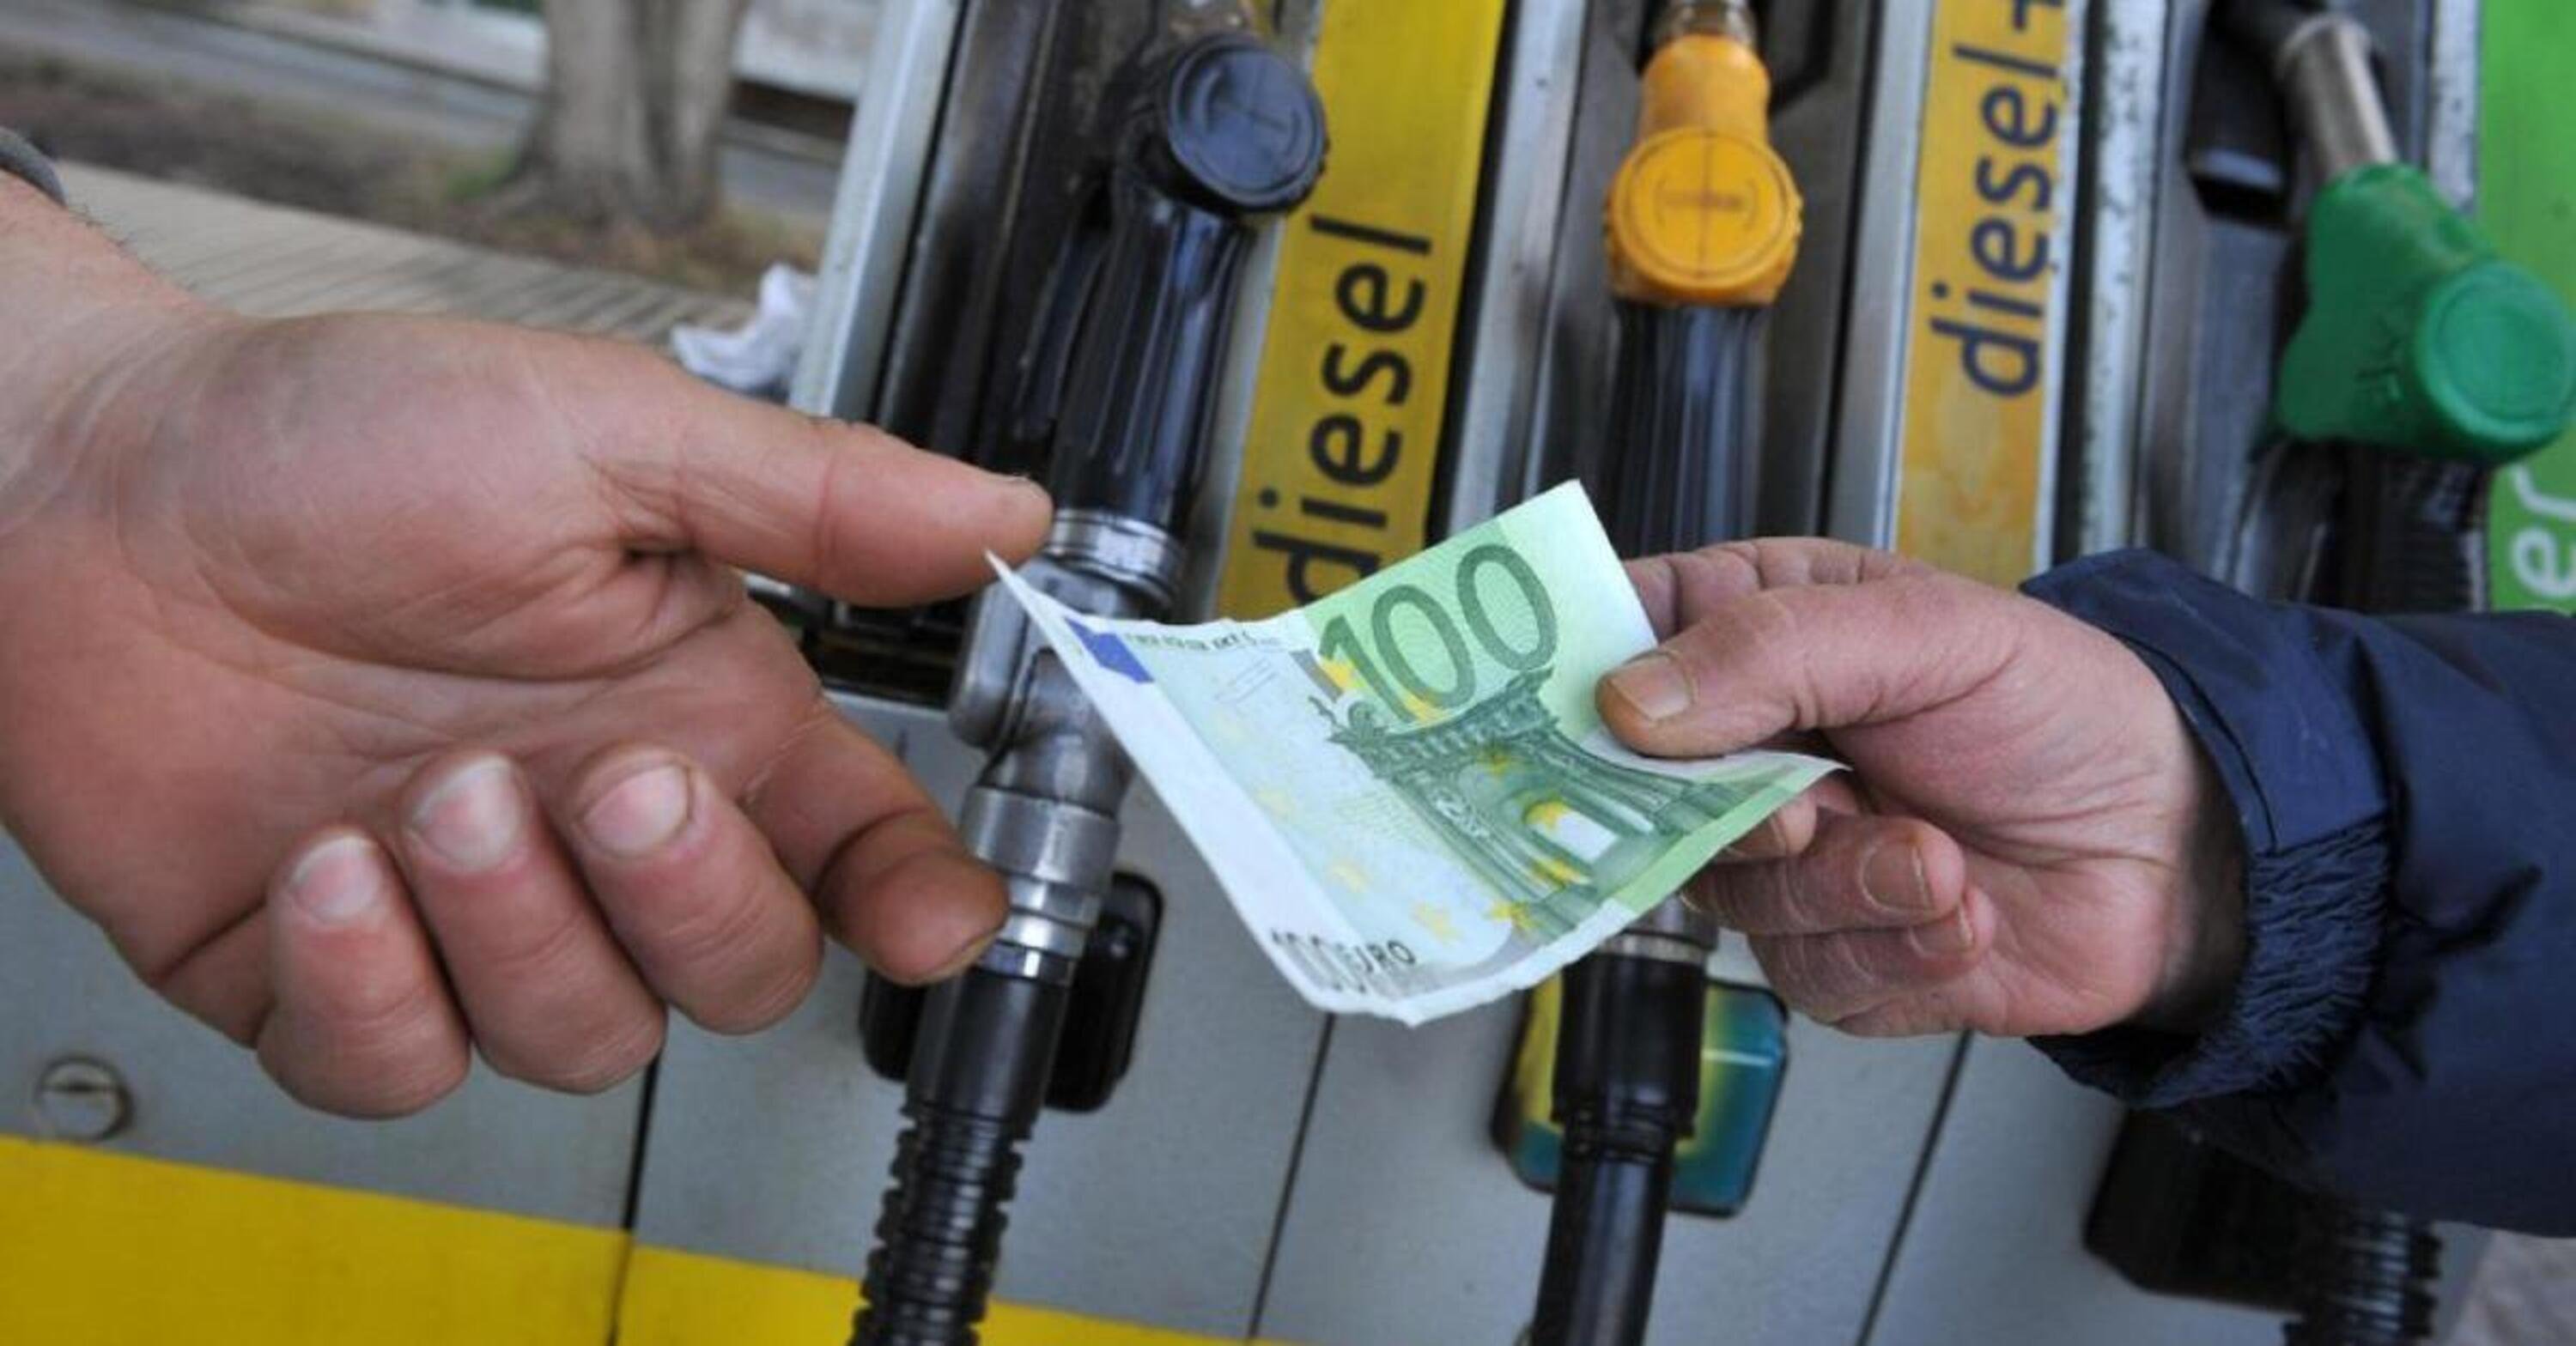 Arriva un primo sconto sui carburanti? Il Ministro Cingolani conferma la lotta europea agli aumenti